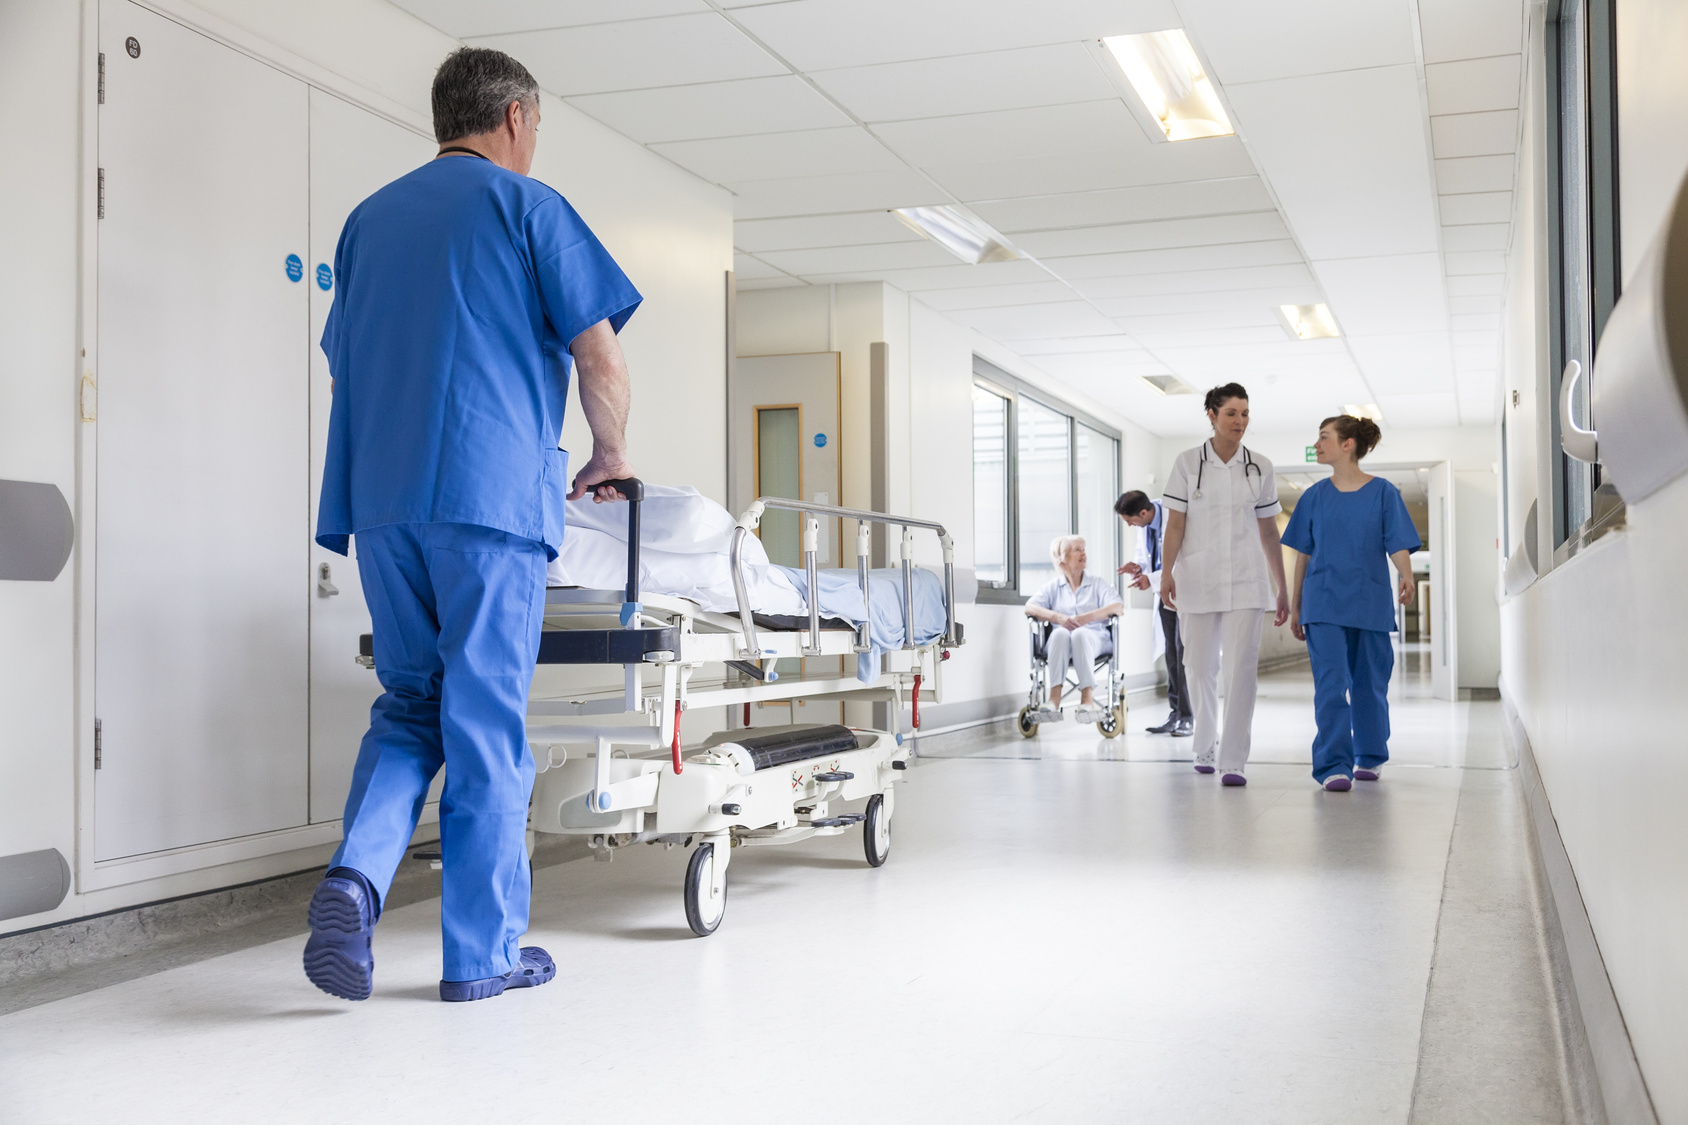 France 3 Nouvelle Aquitaine : l'hôpital de la Rochelle utilise M-Visibilité pour la gestion des lits